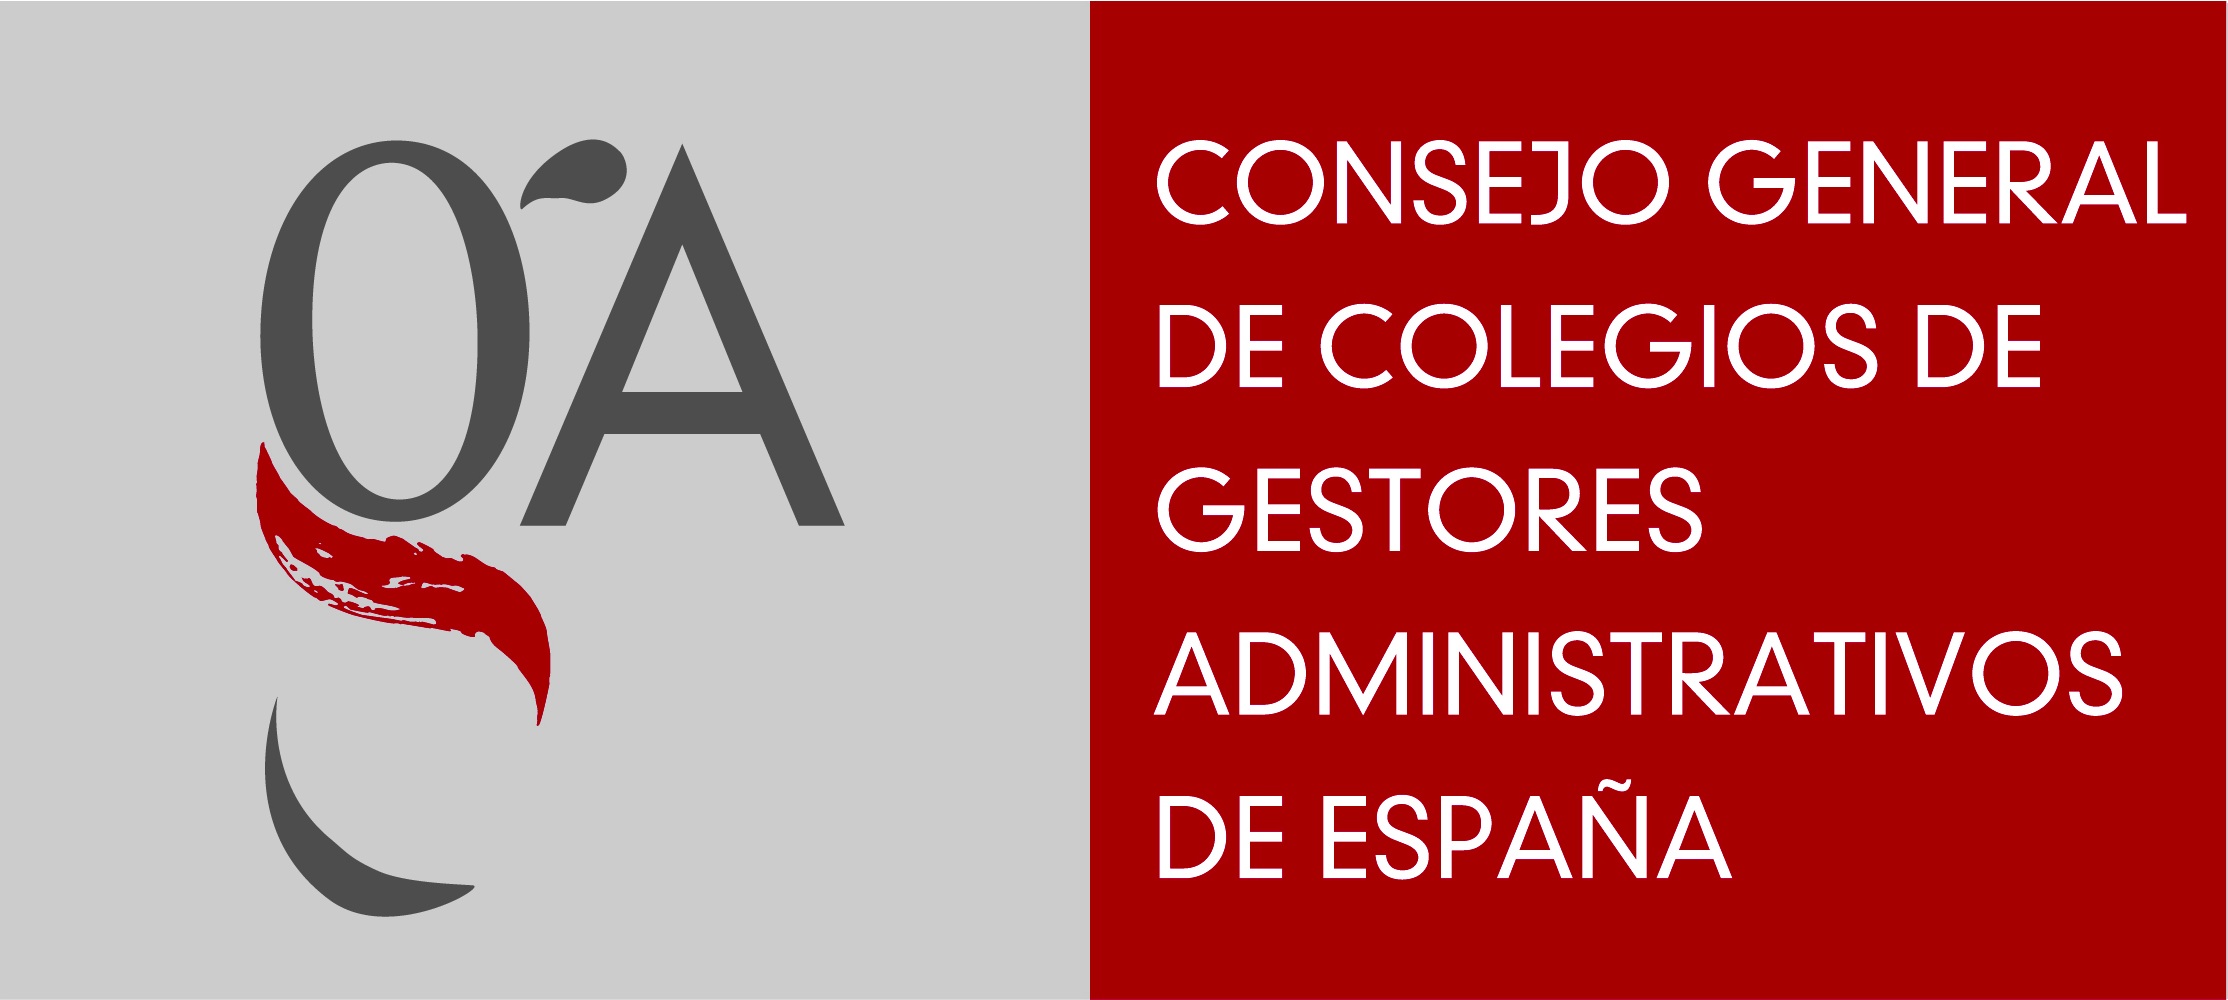 Logo Consejo General de Colegios de Gestores Administrativos